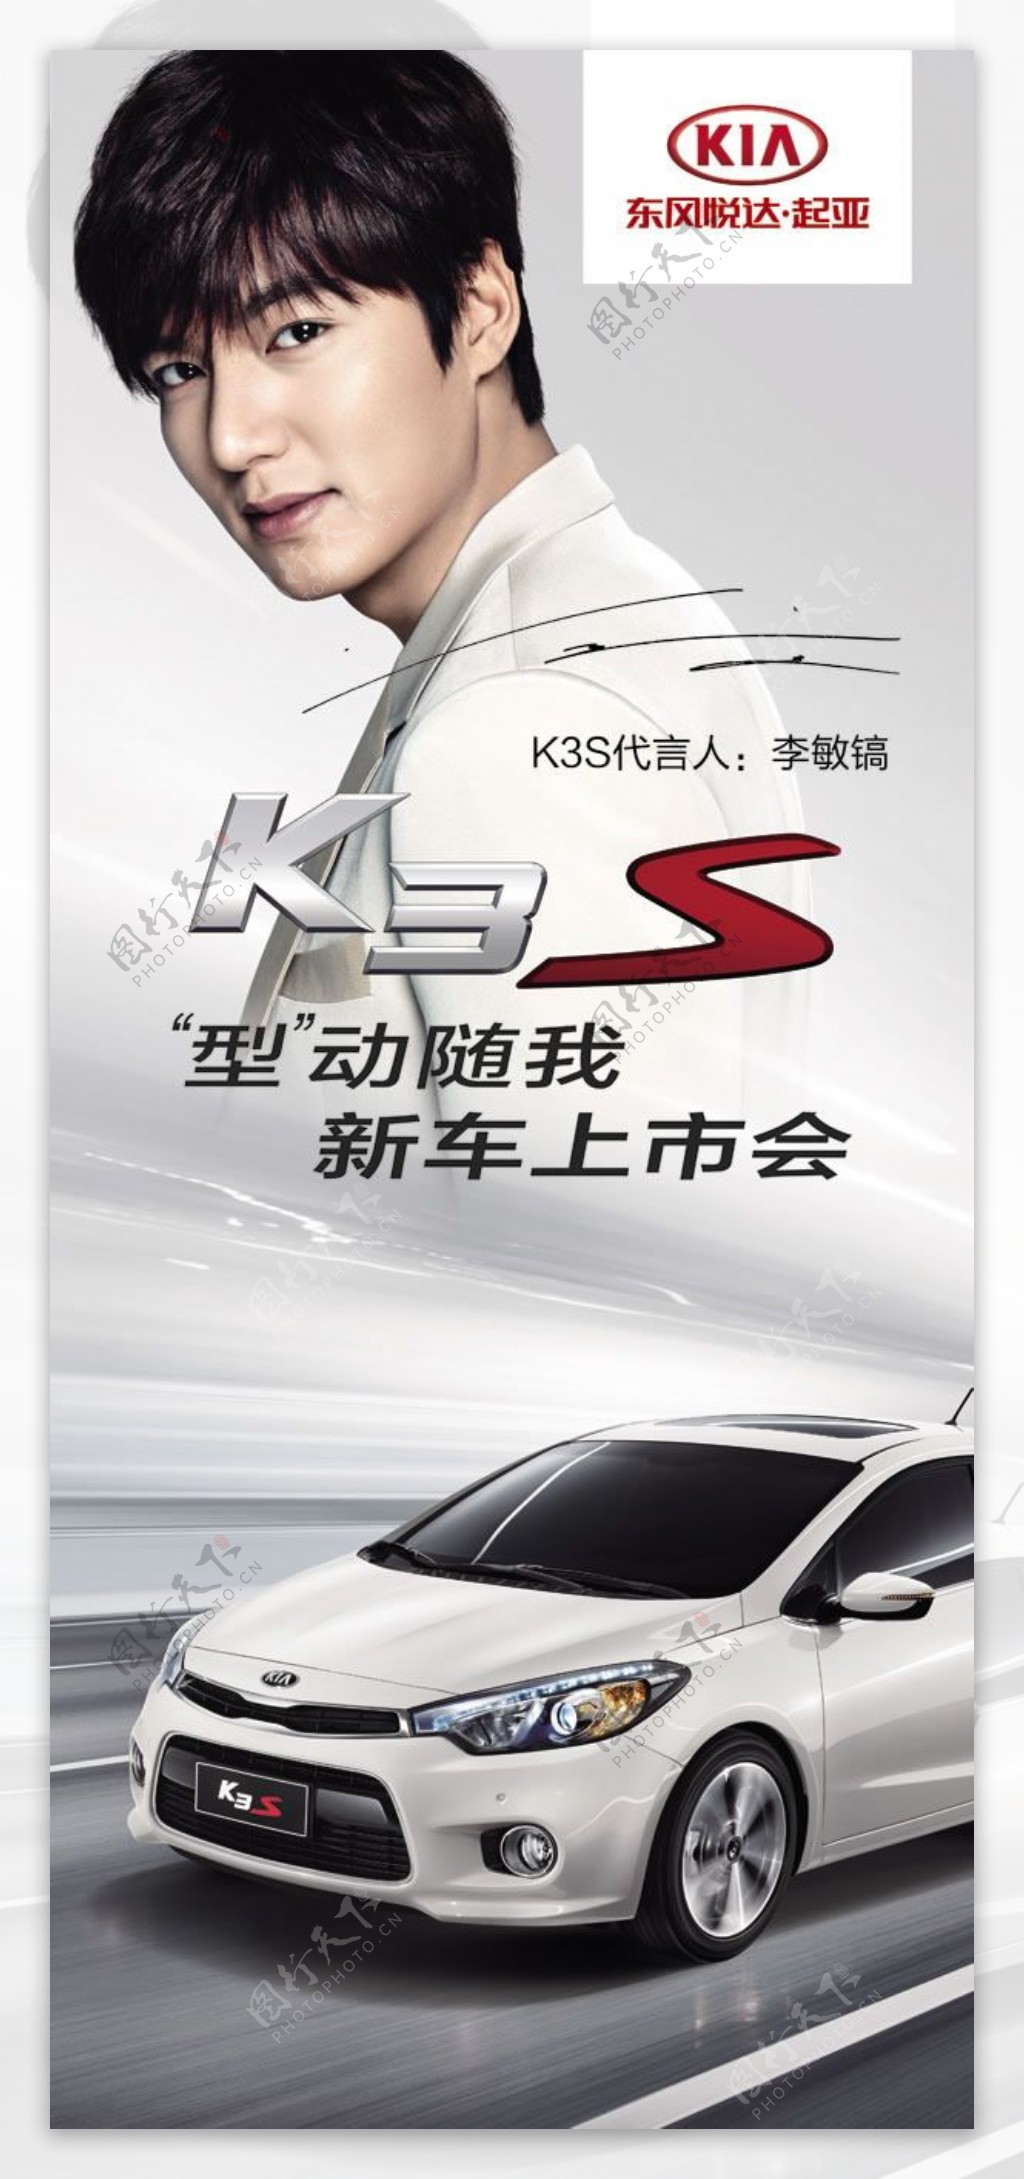 起亚k3s汽车平面广告设计psd素材